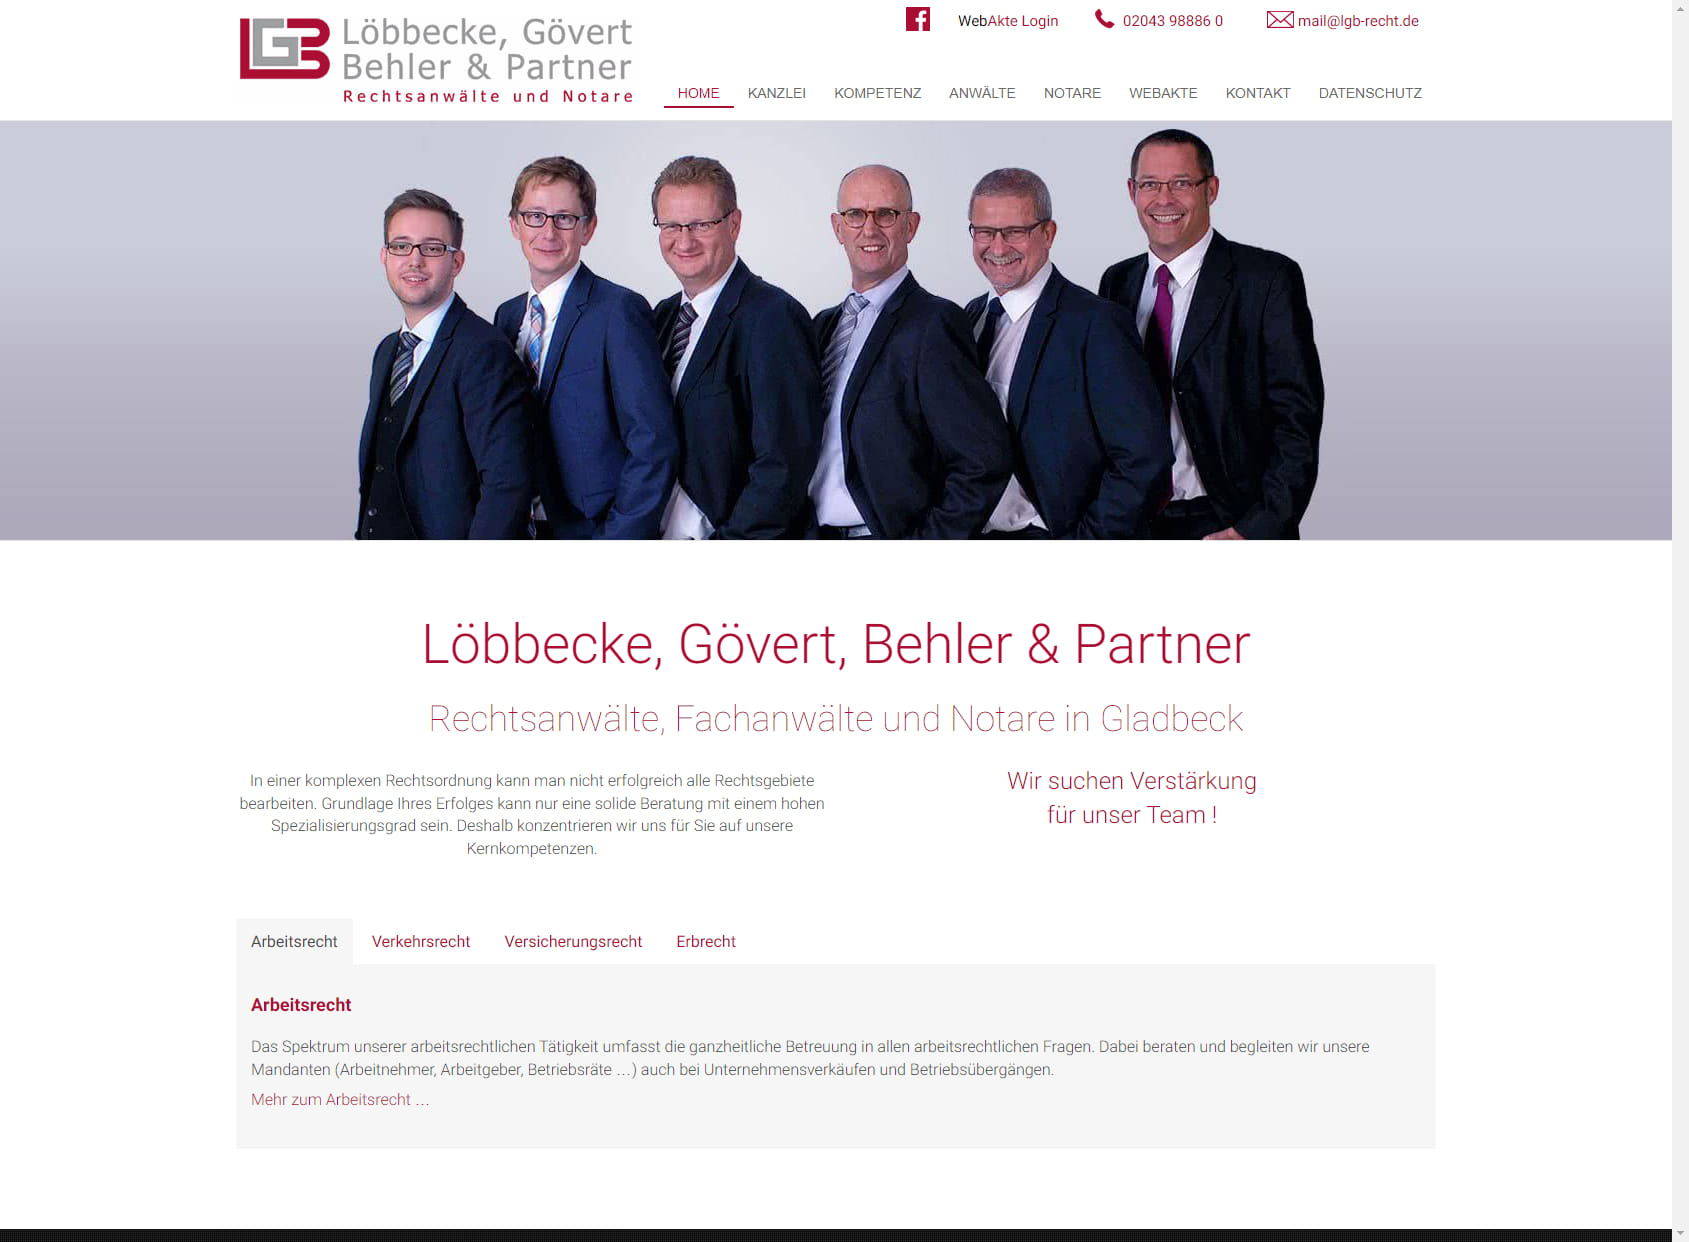 Rechtsanwälte Löbbecke Gövert Behler & Partner - Fachanwälte und Notare